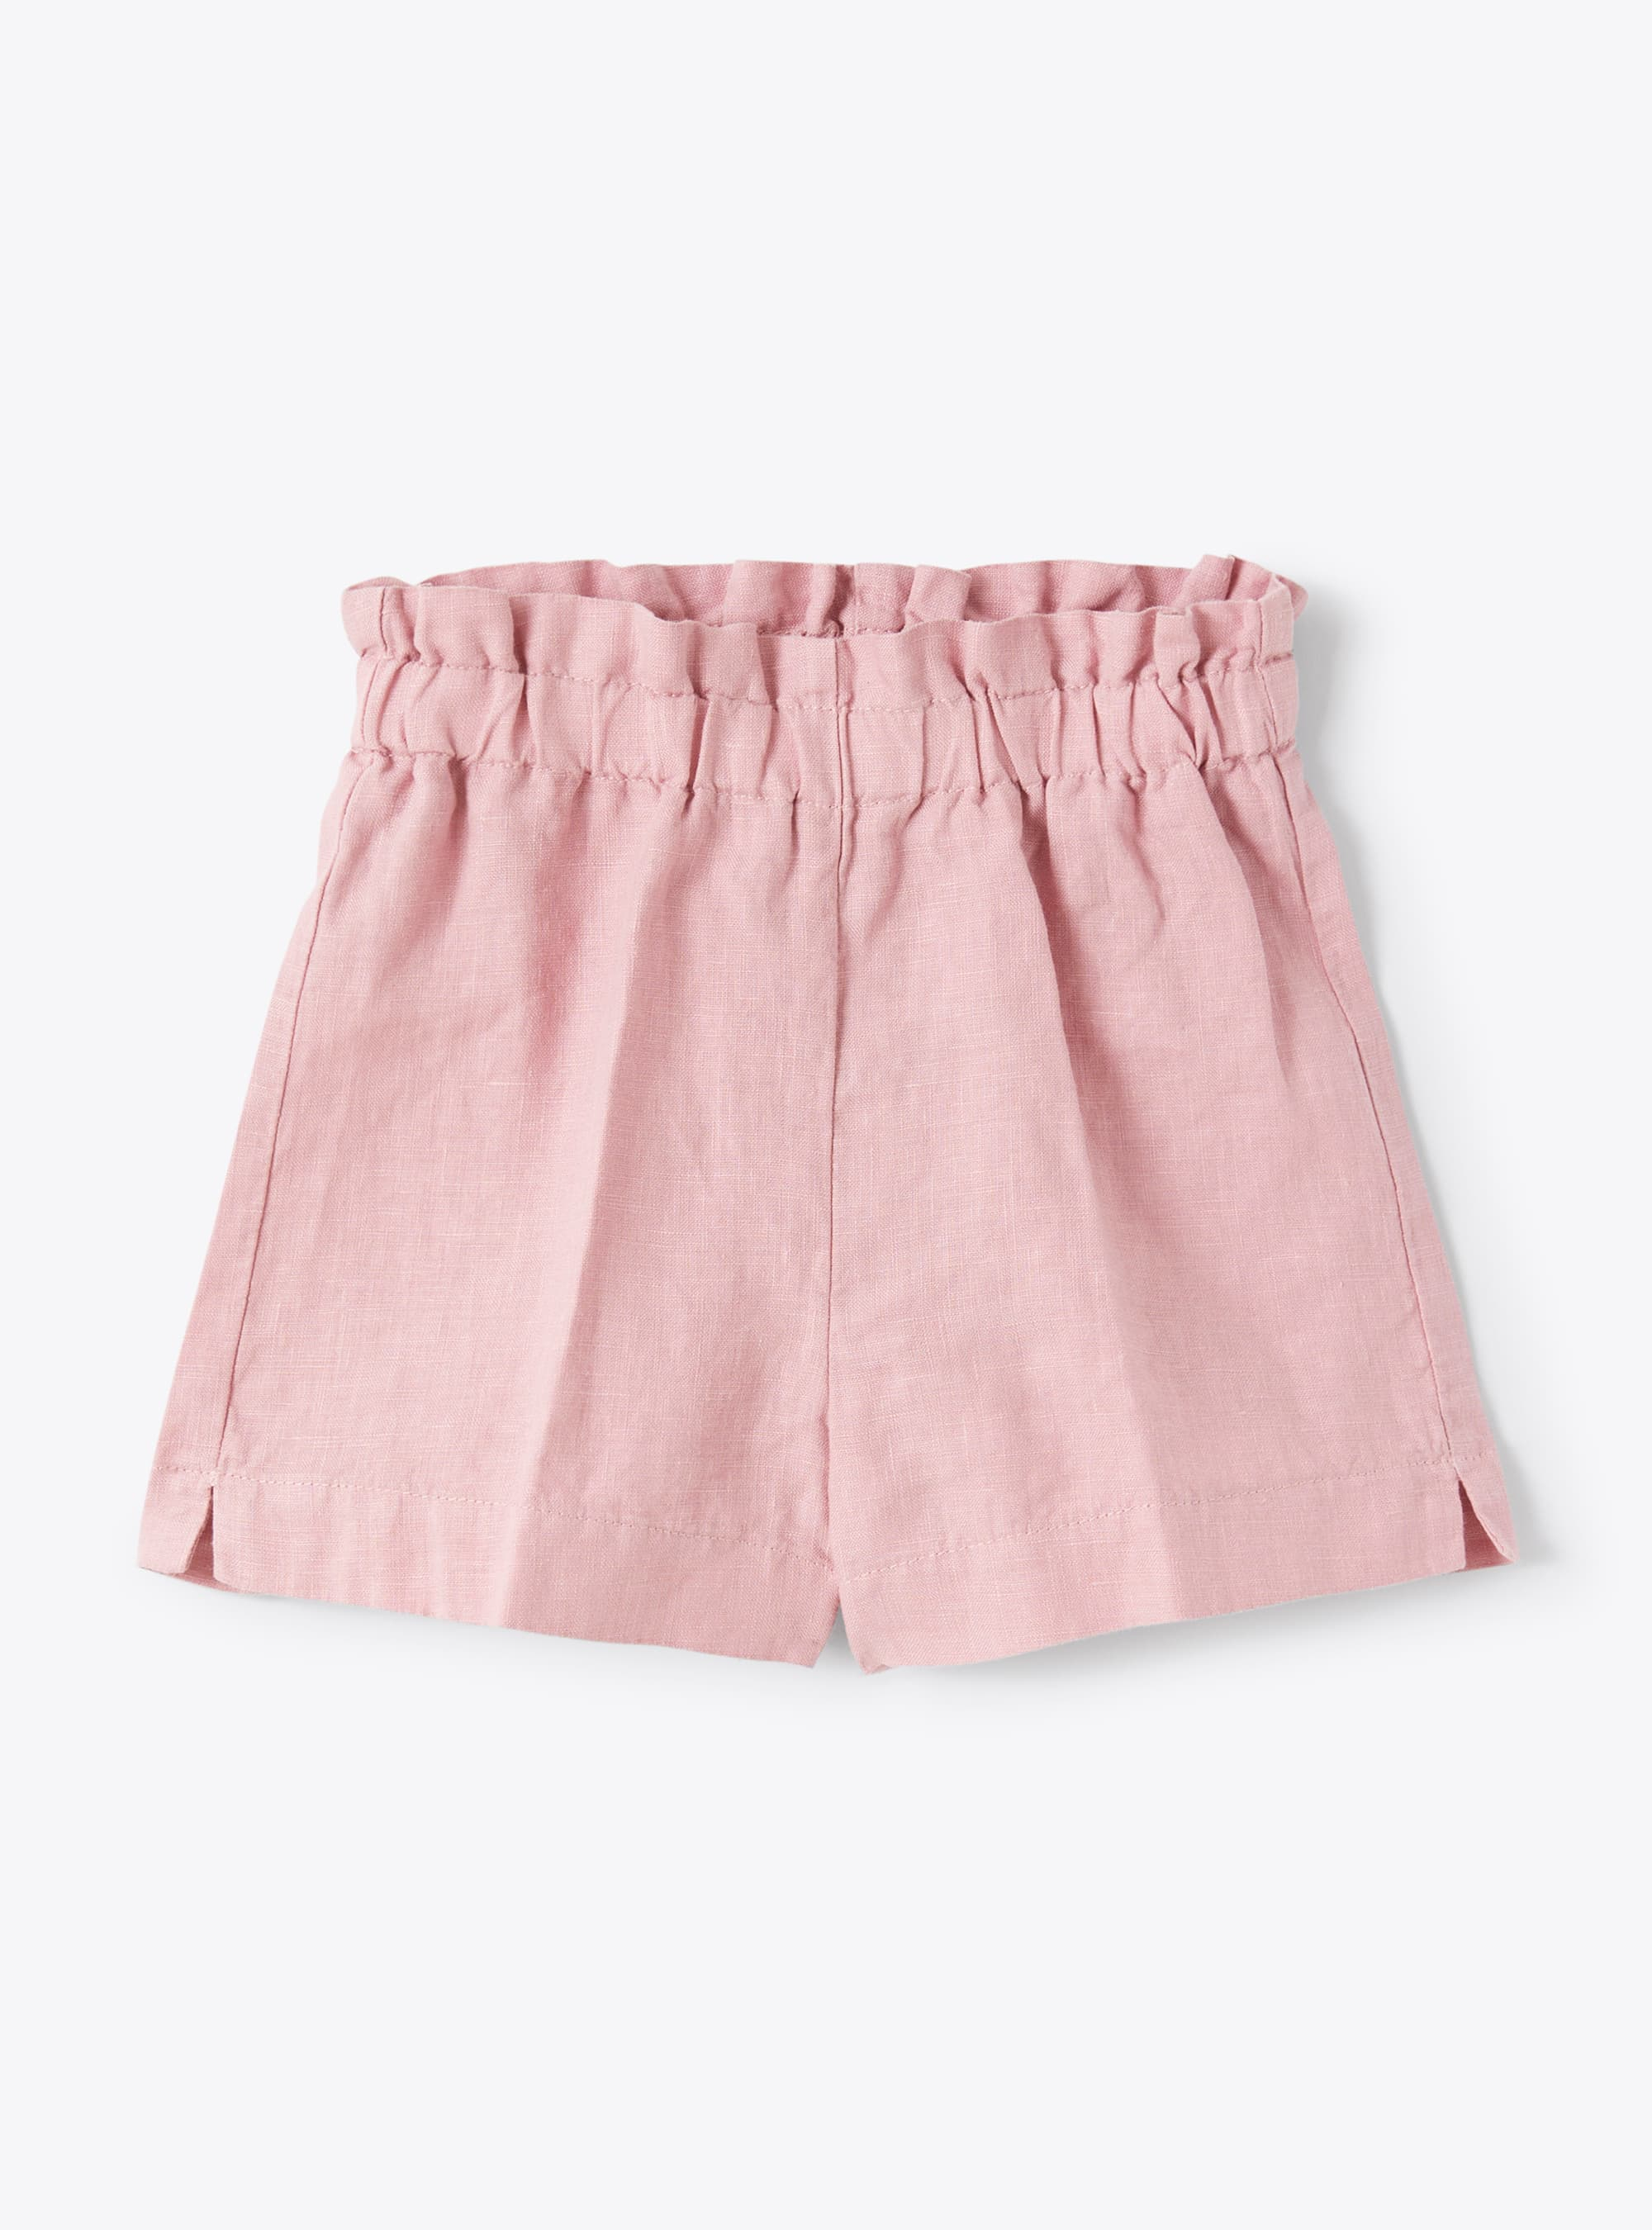 Short in lino tinto capo rosa - Pantaloni - Il Gufo